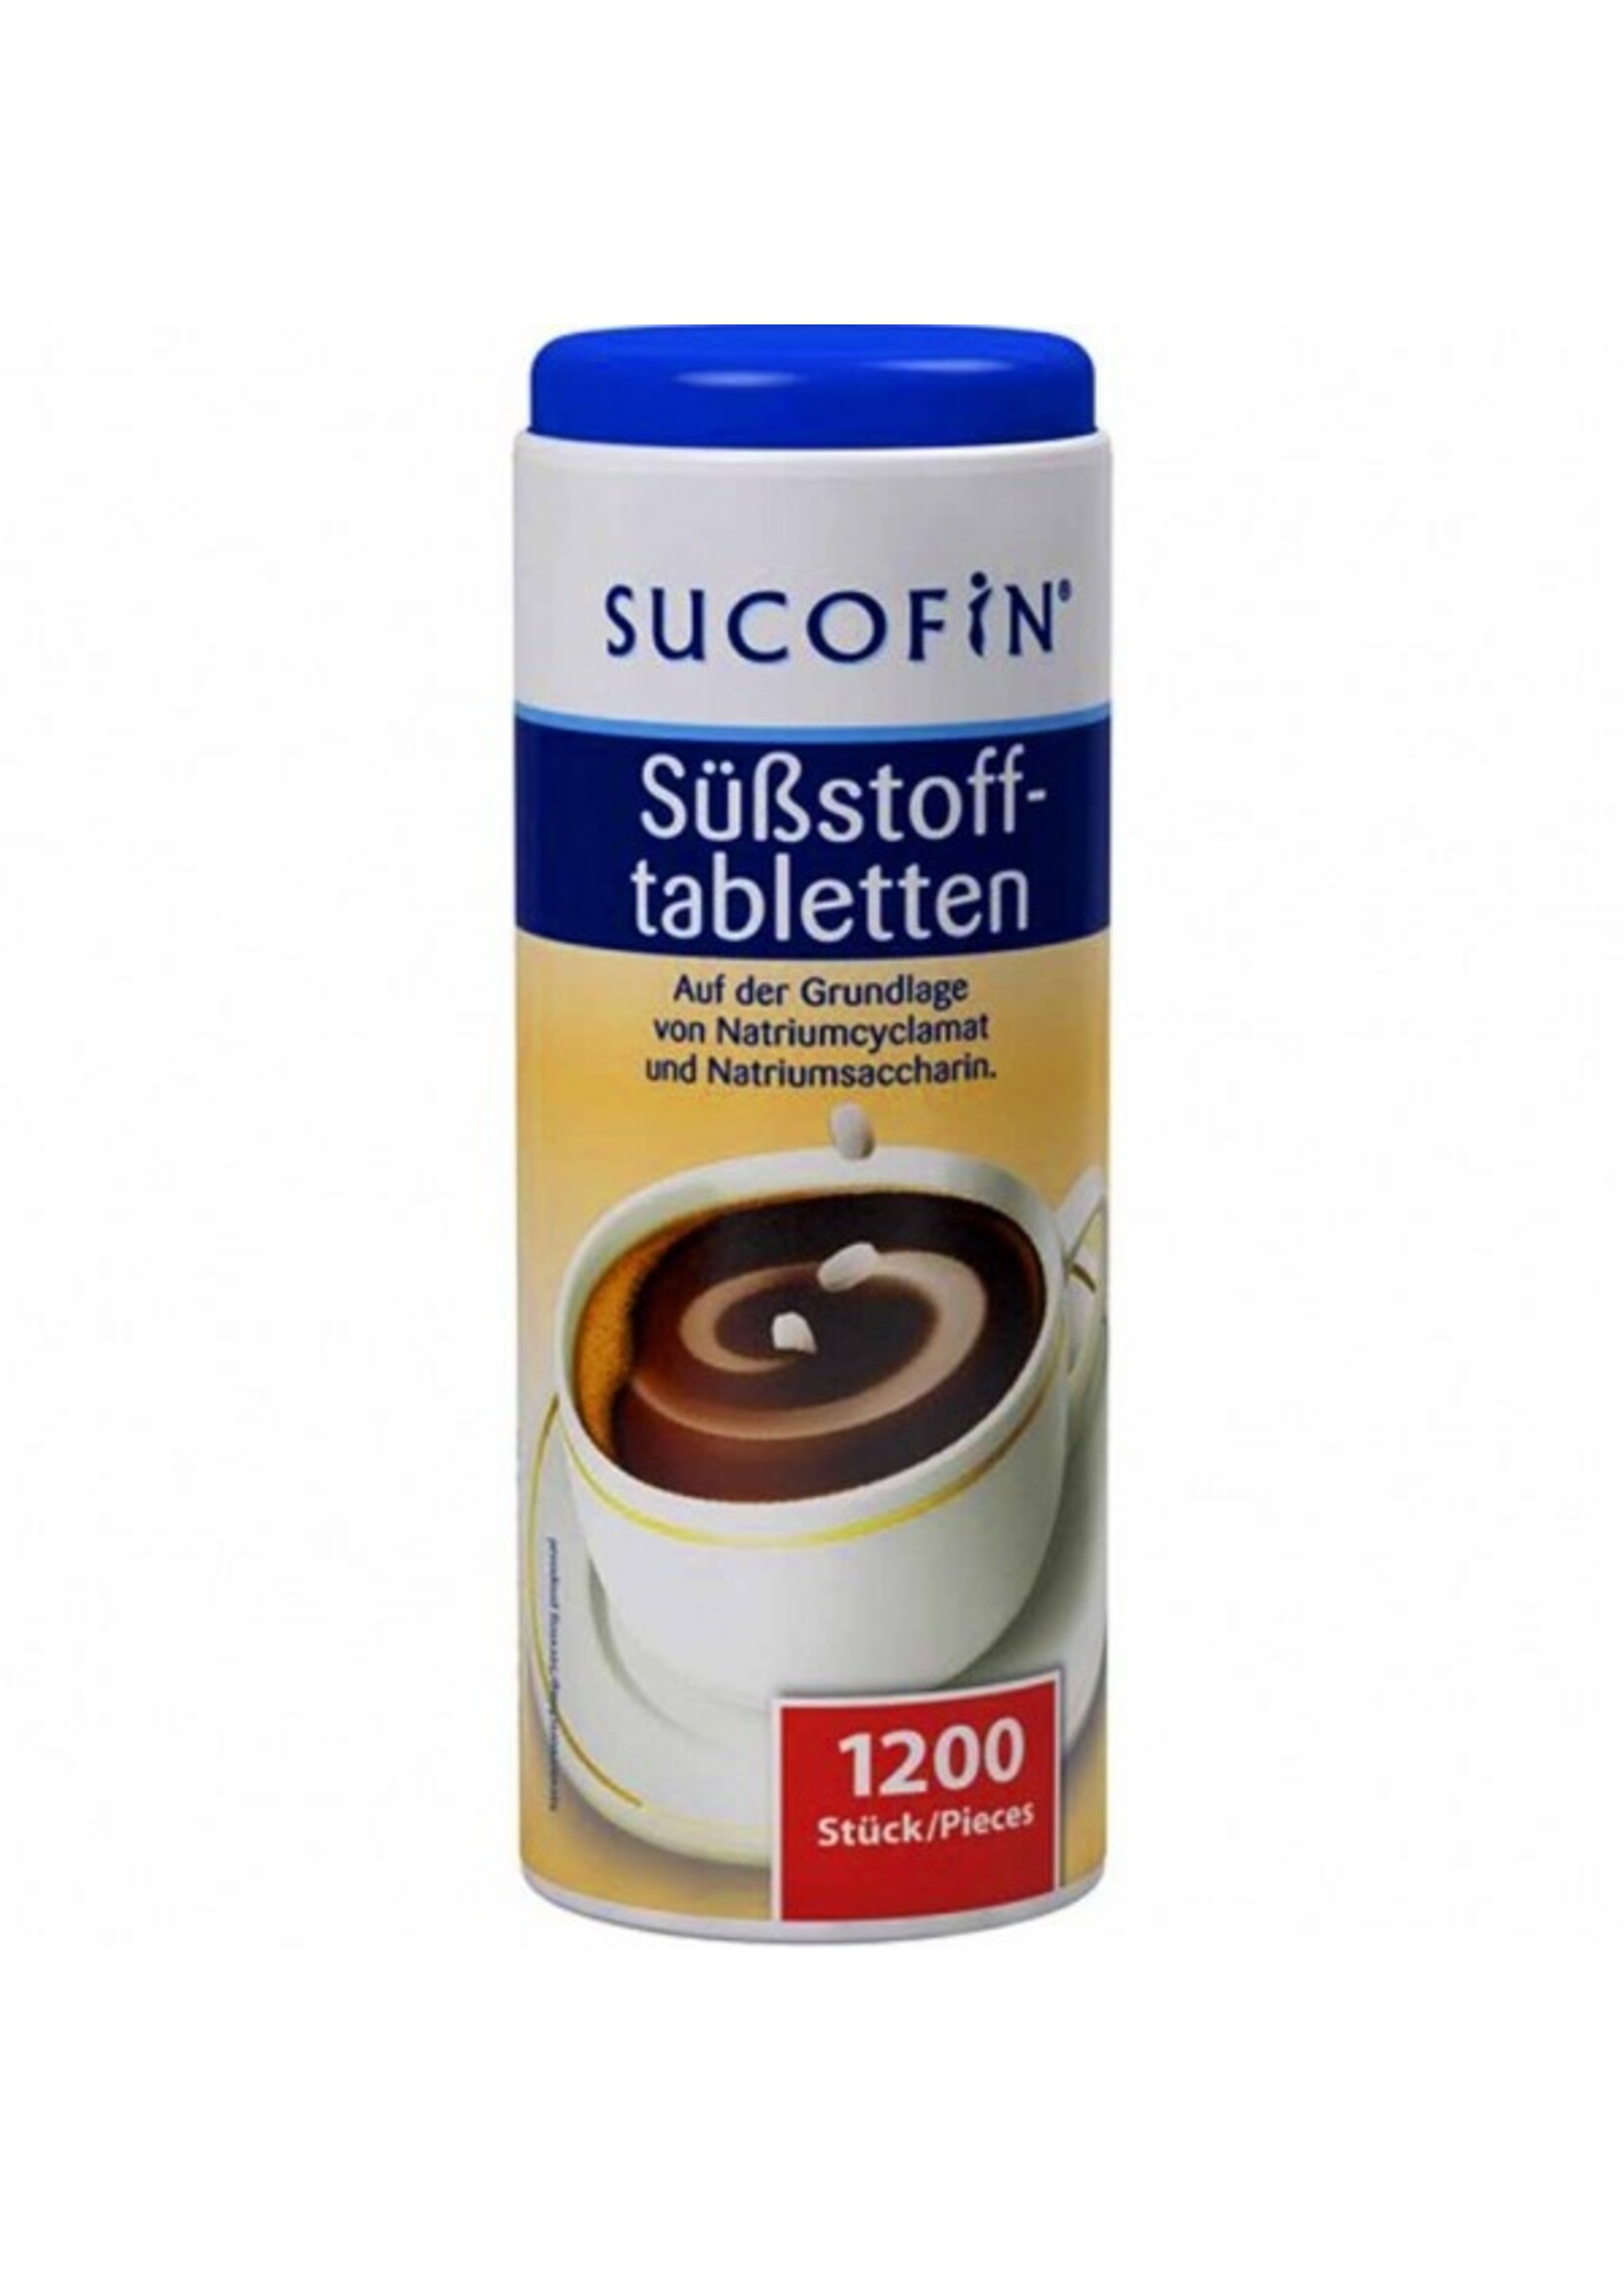 Sucofin-Süßstofftabletten 1200x